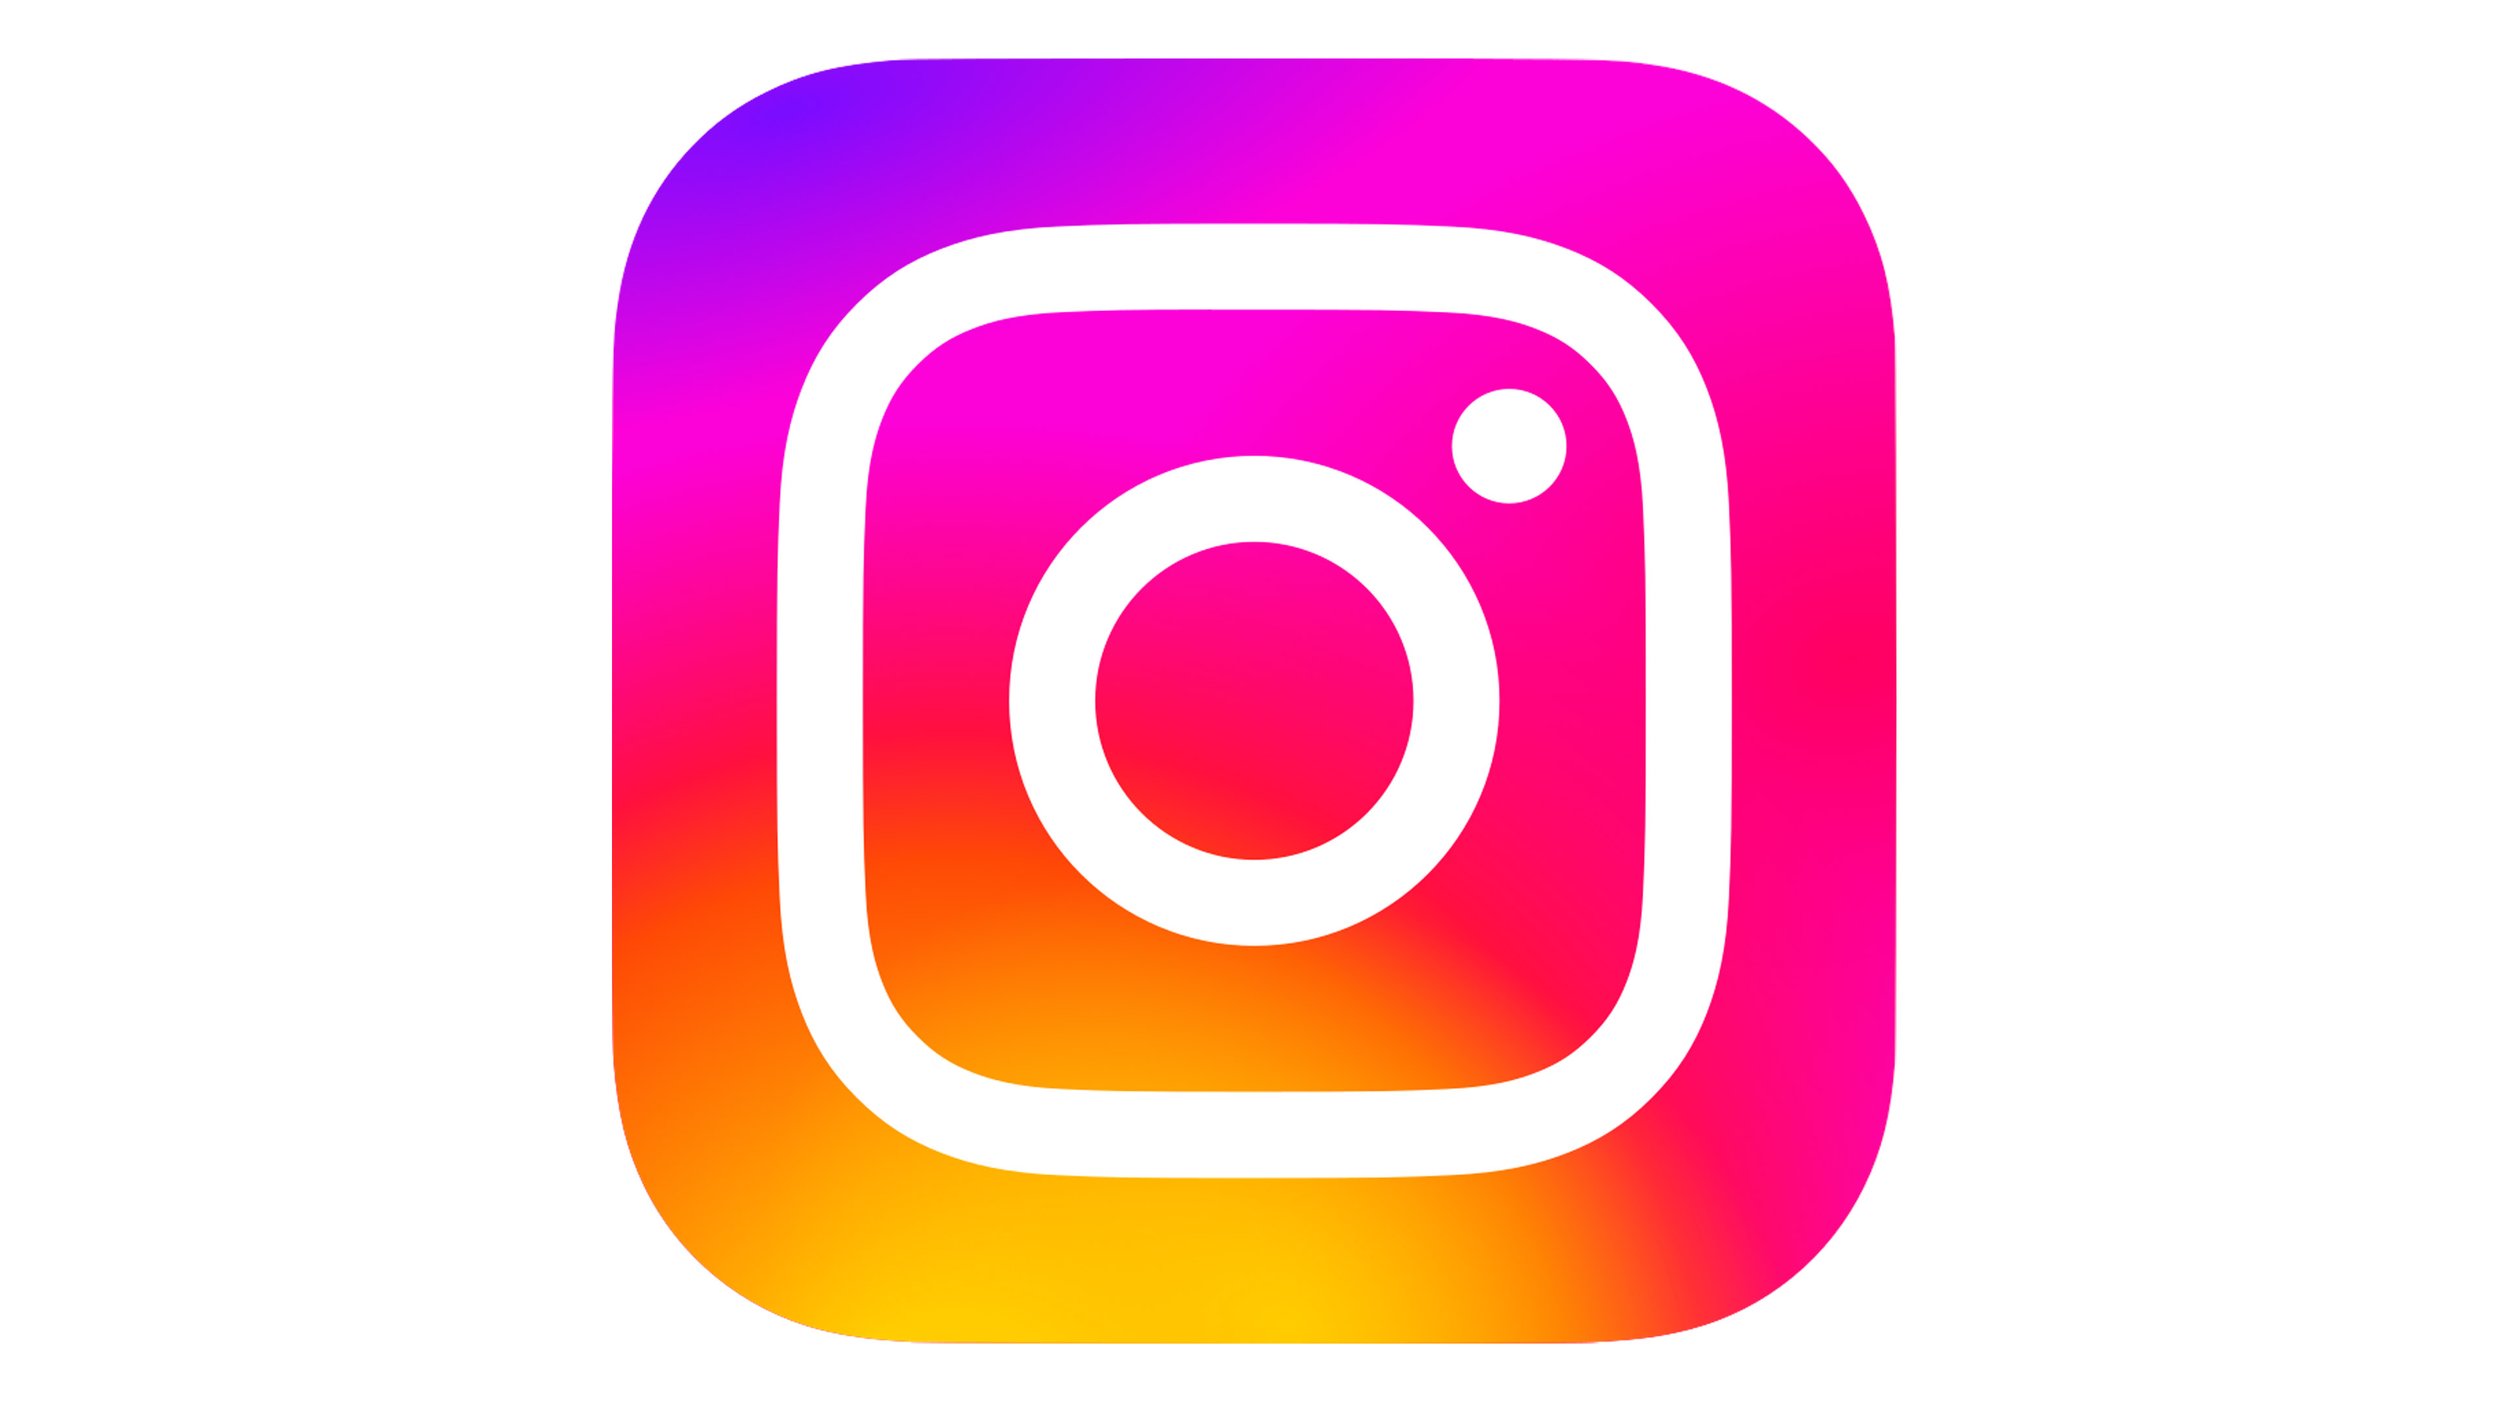 Instagram-Logo.jpg